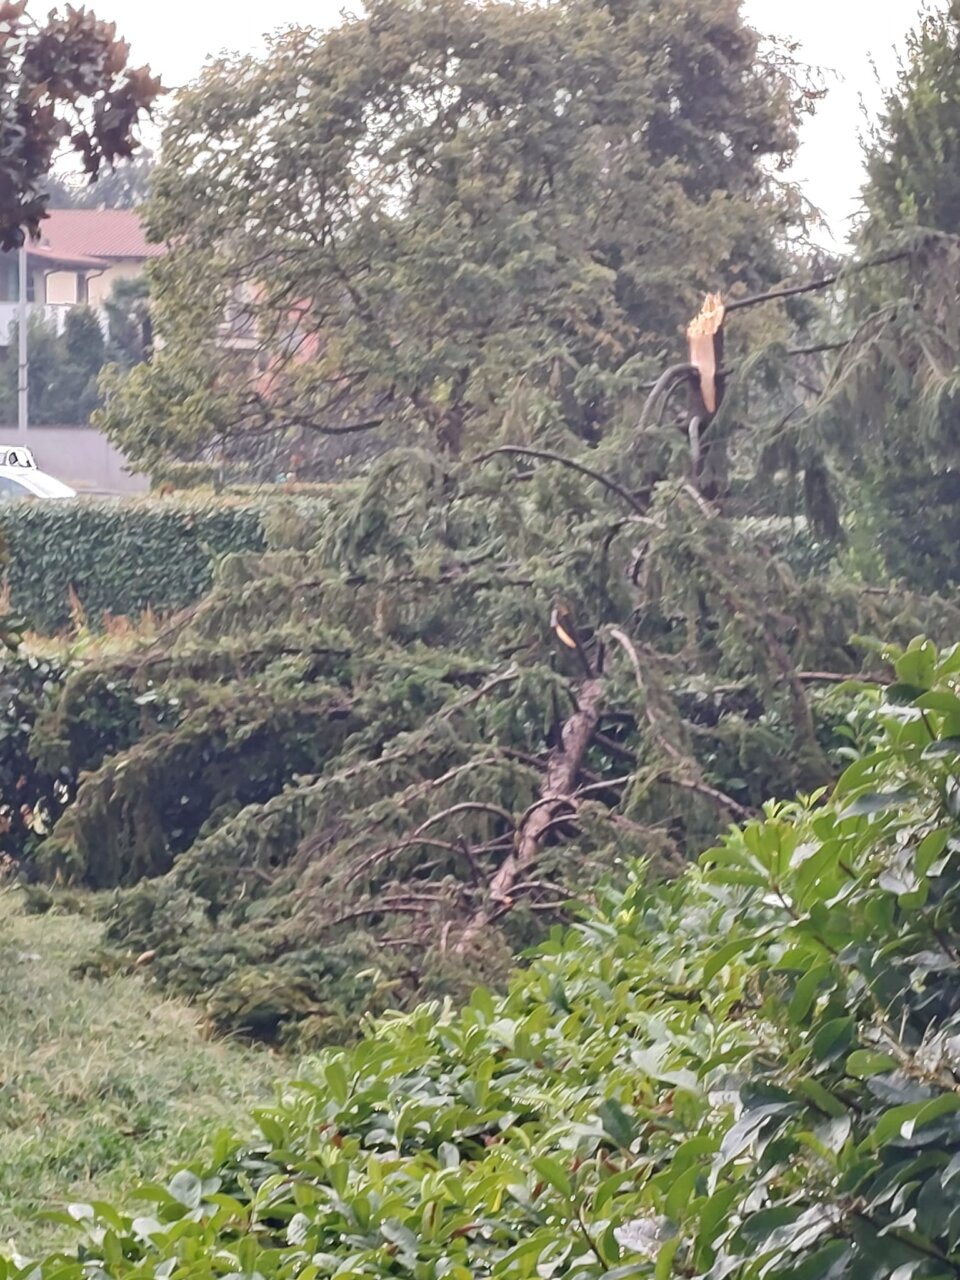 Caduto ora albero via morona 52 davanti a entrata condominiale